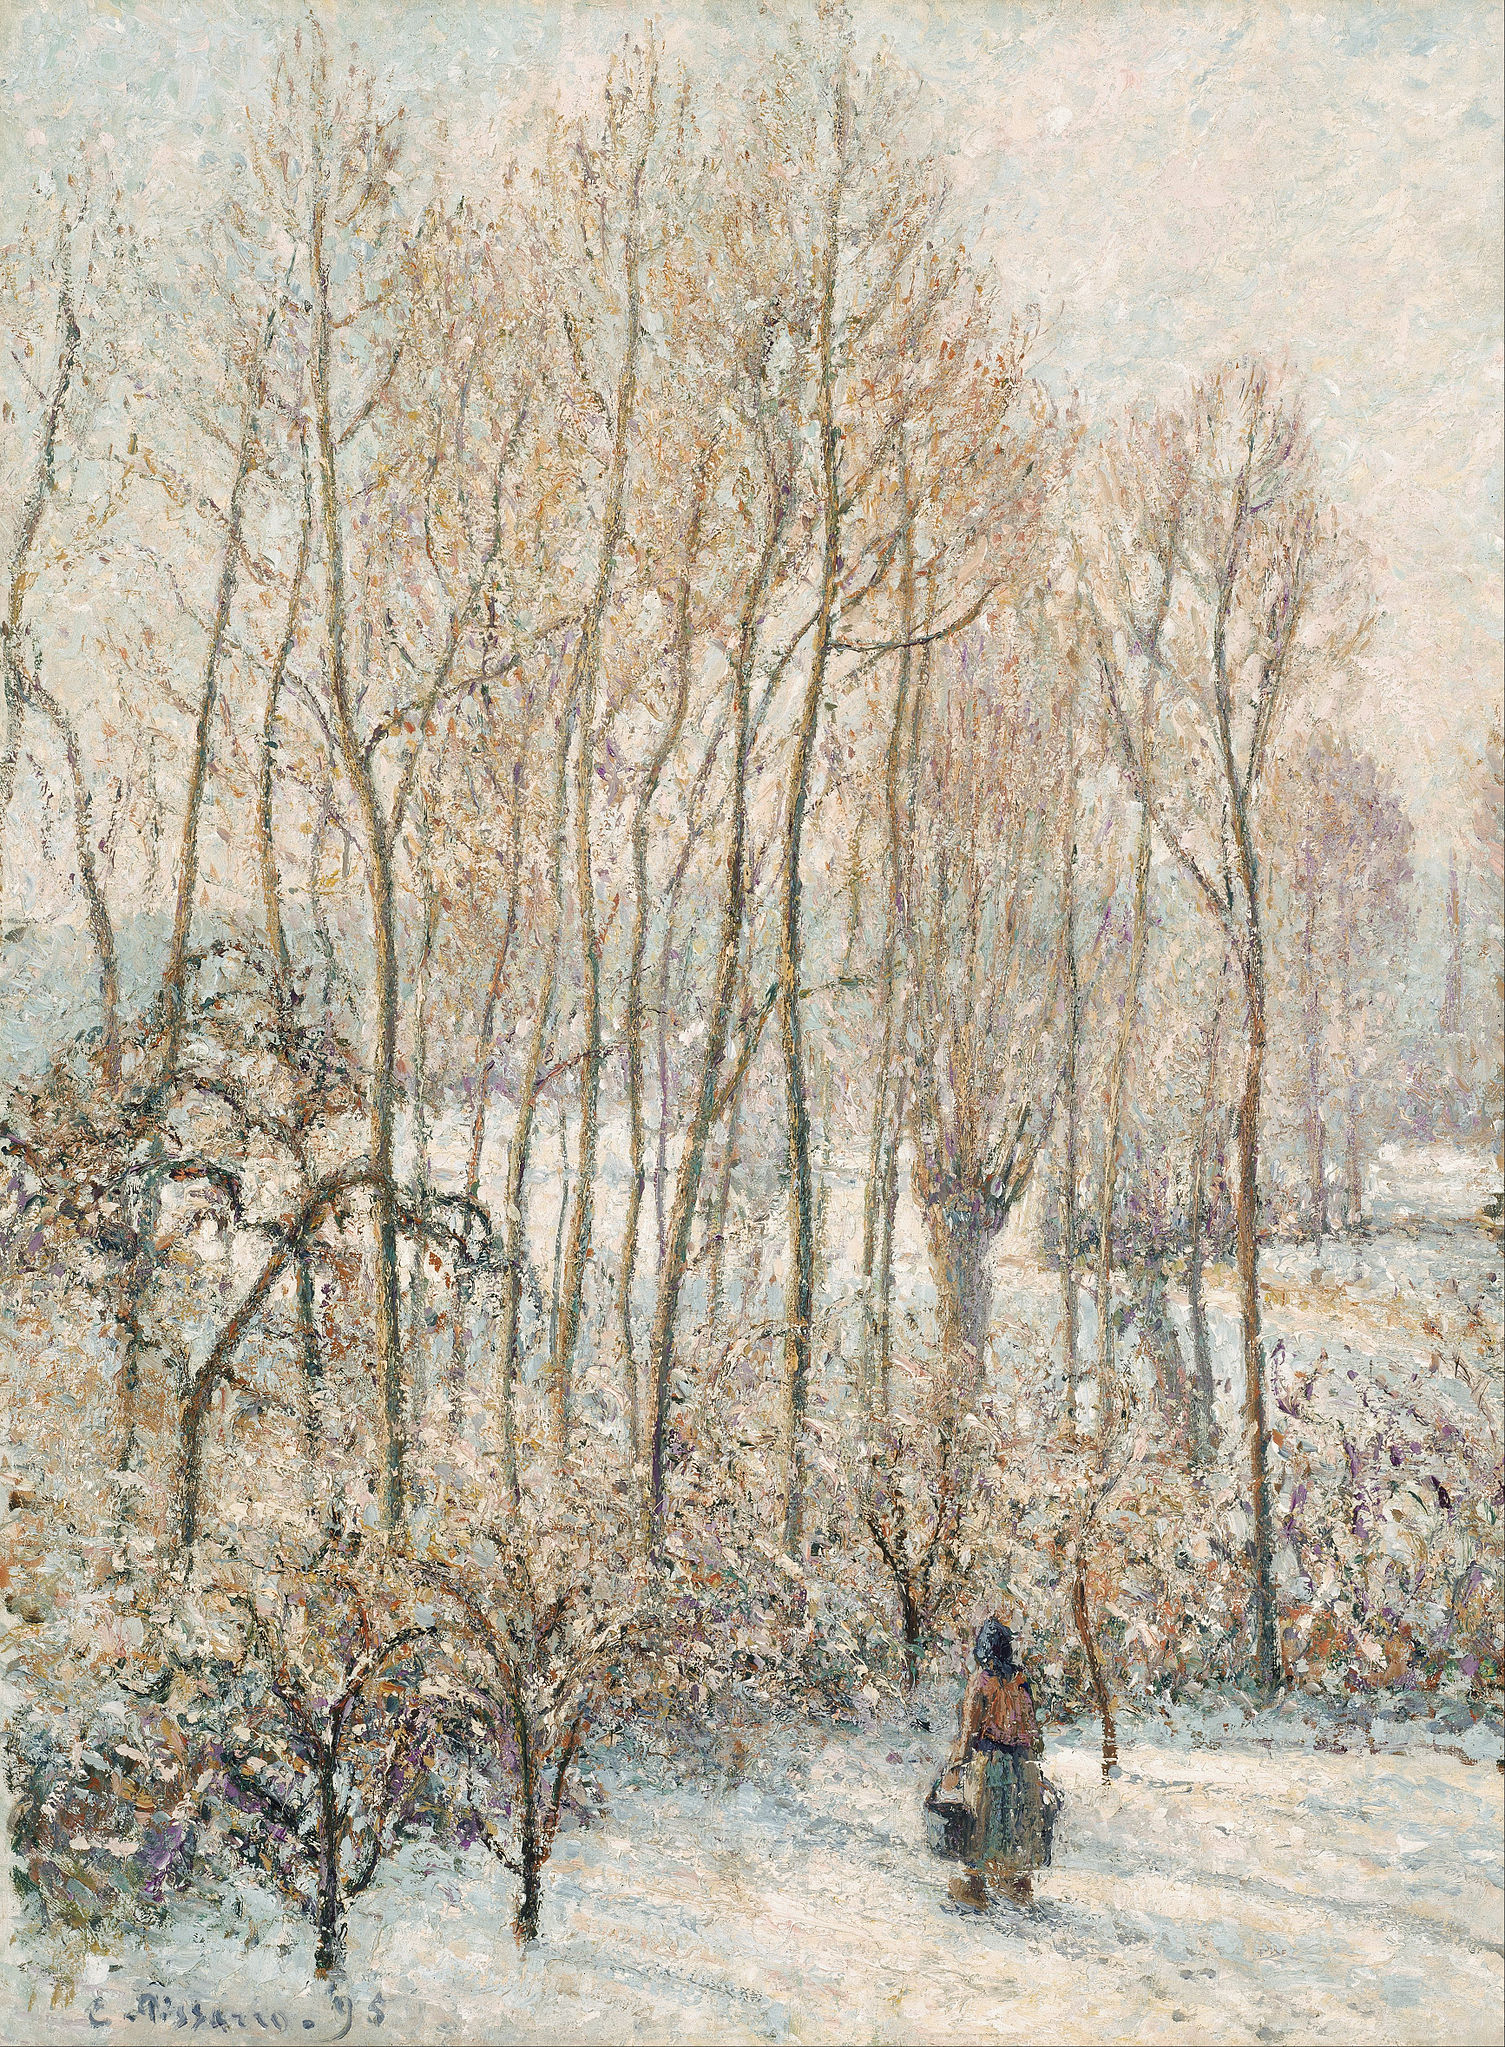 Światło poranka na śniegu, Éragny-sur-Epte by Camille Pissarro - 1895 - 82,3 x 61,6 cm 